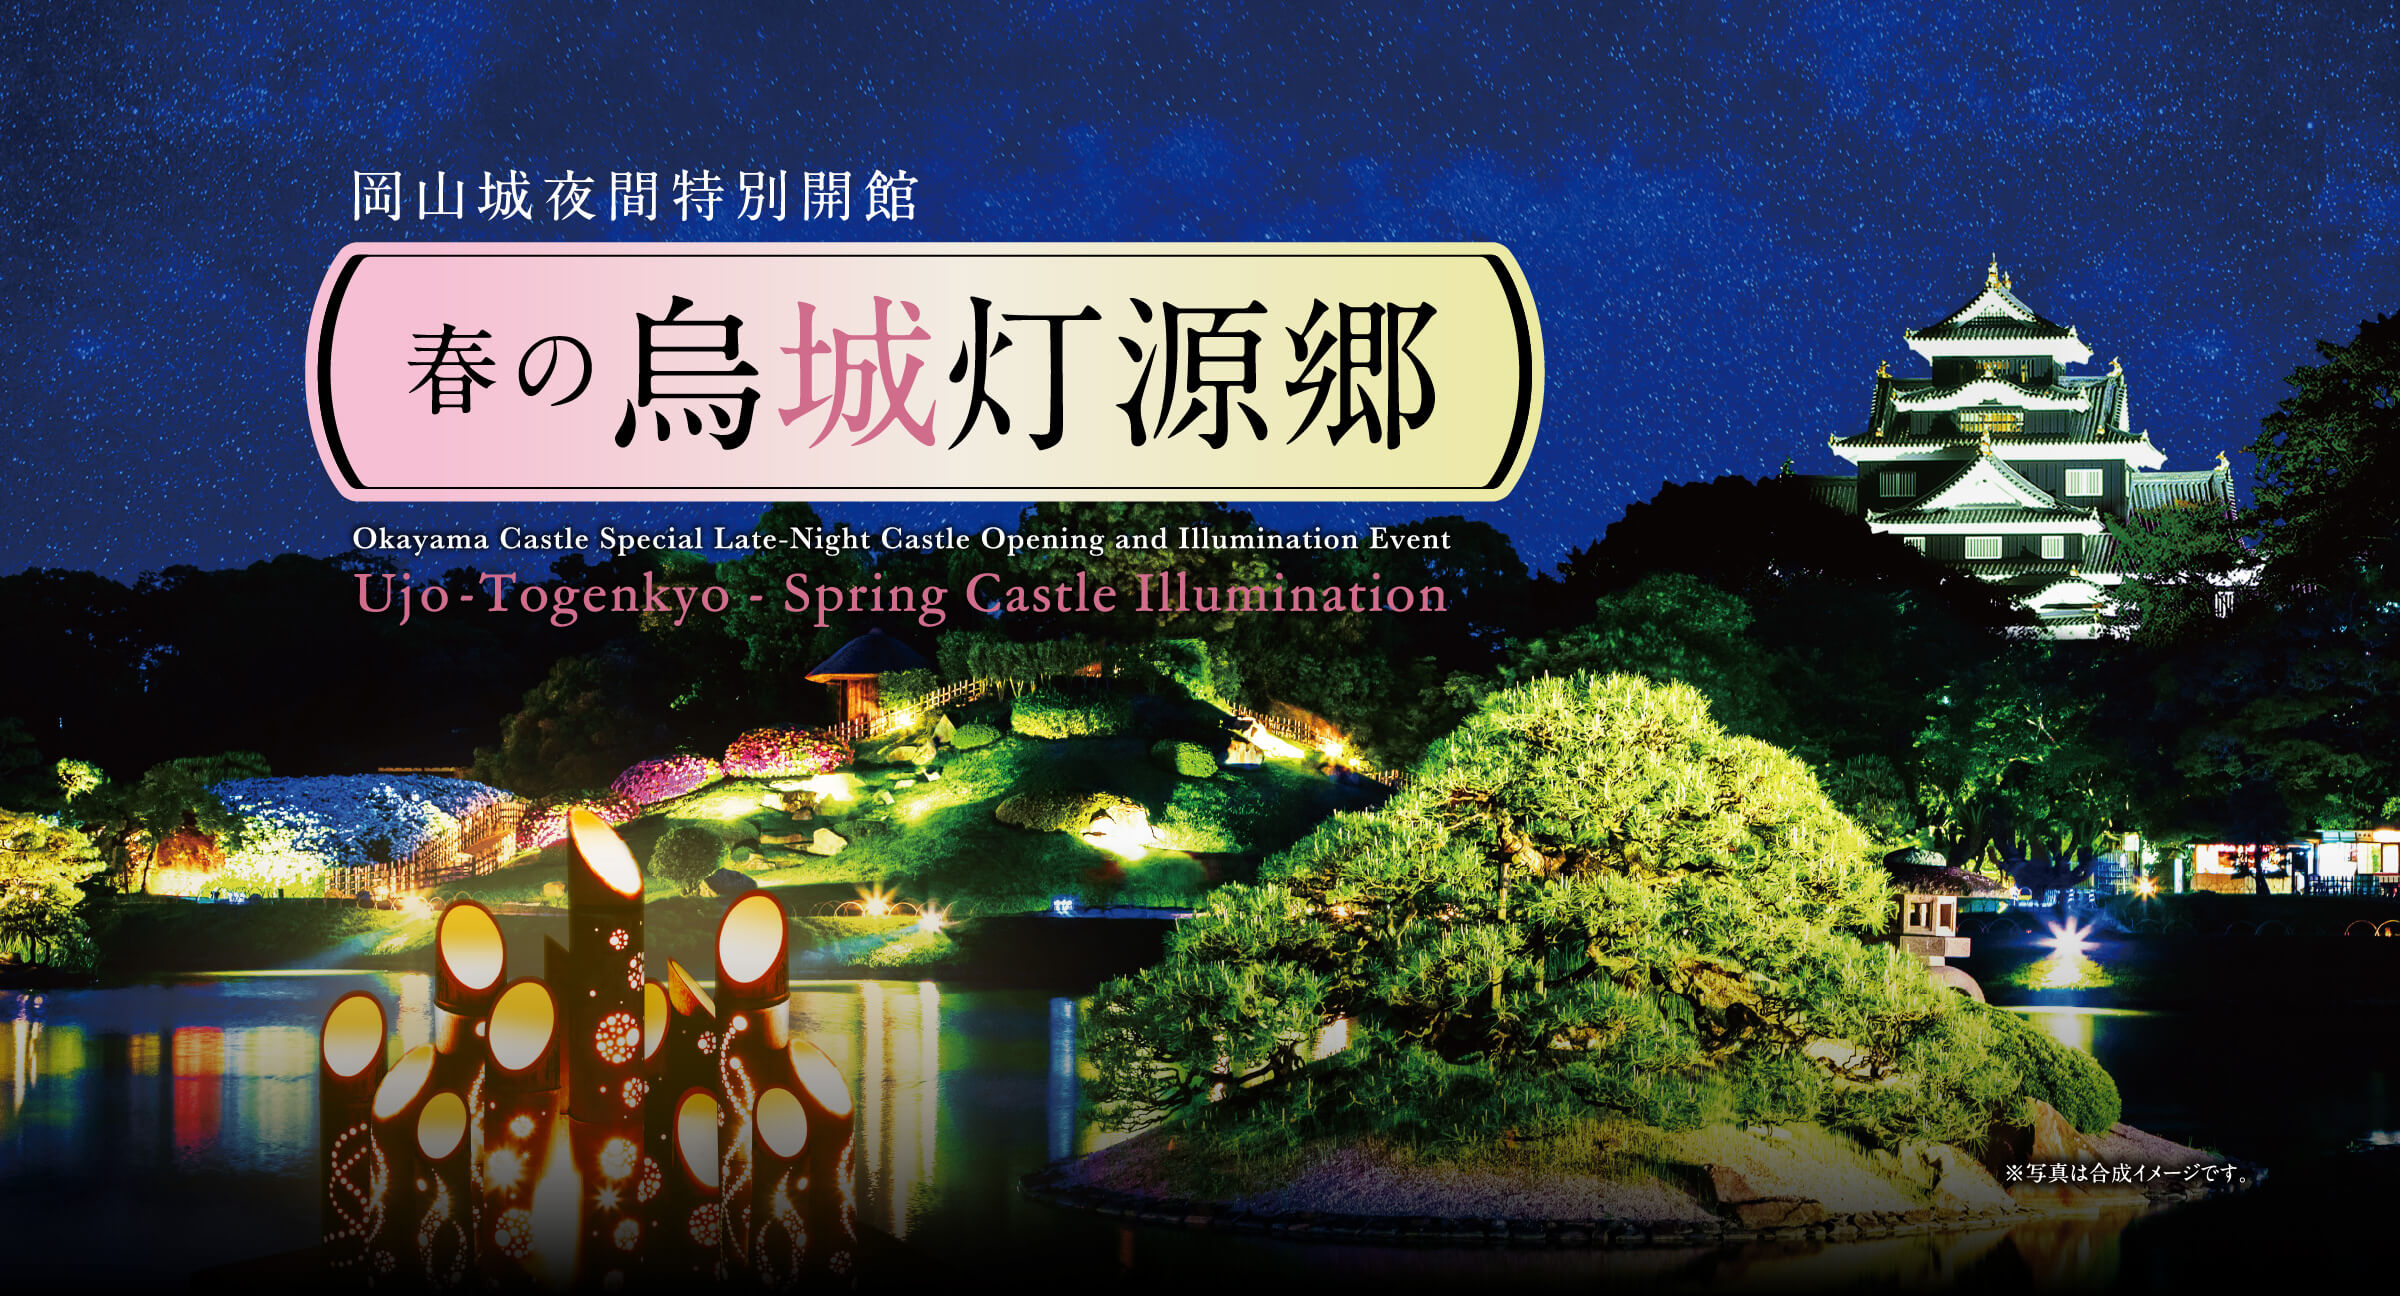 岡山城夜間特別開館 春の烏城灯源郷 Okayama Castle Special Late-Night Castle Opening and Illumination Event Ujo-Togenkyo - Spring Castle Illumination